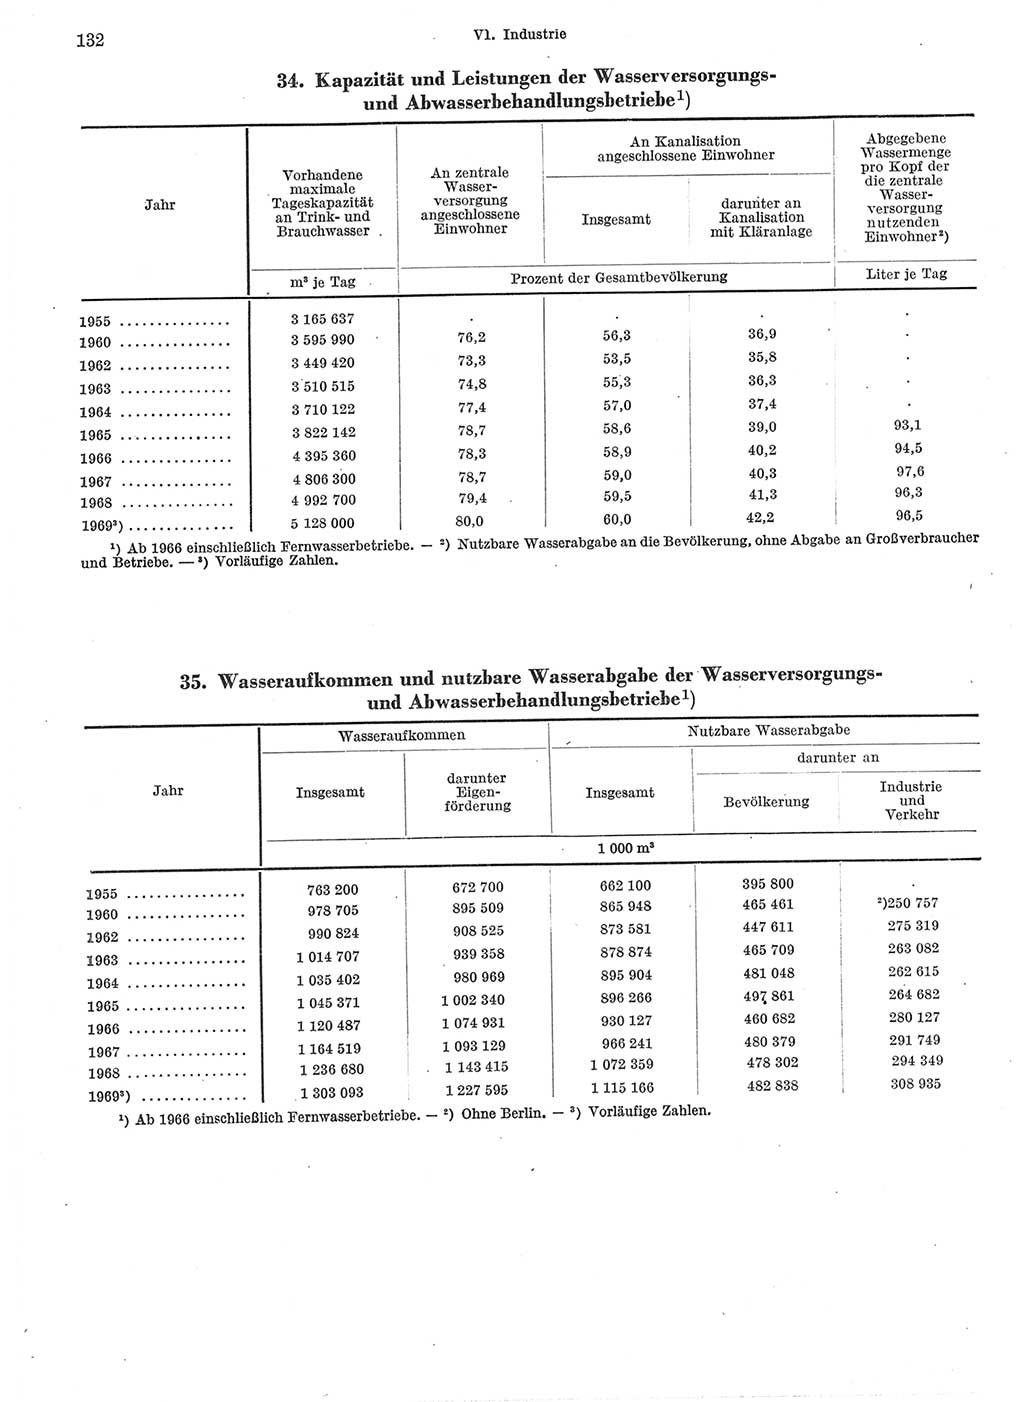 Statistisches Jahrbuch der Deutschen Demokratischen Republik (DDR) 1970, Seite 132 (Stat. Jb. DDR 1970, S. 132)